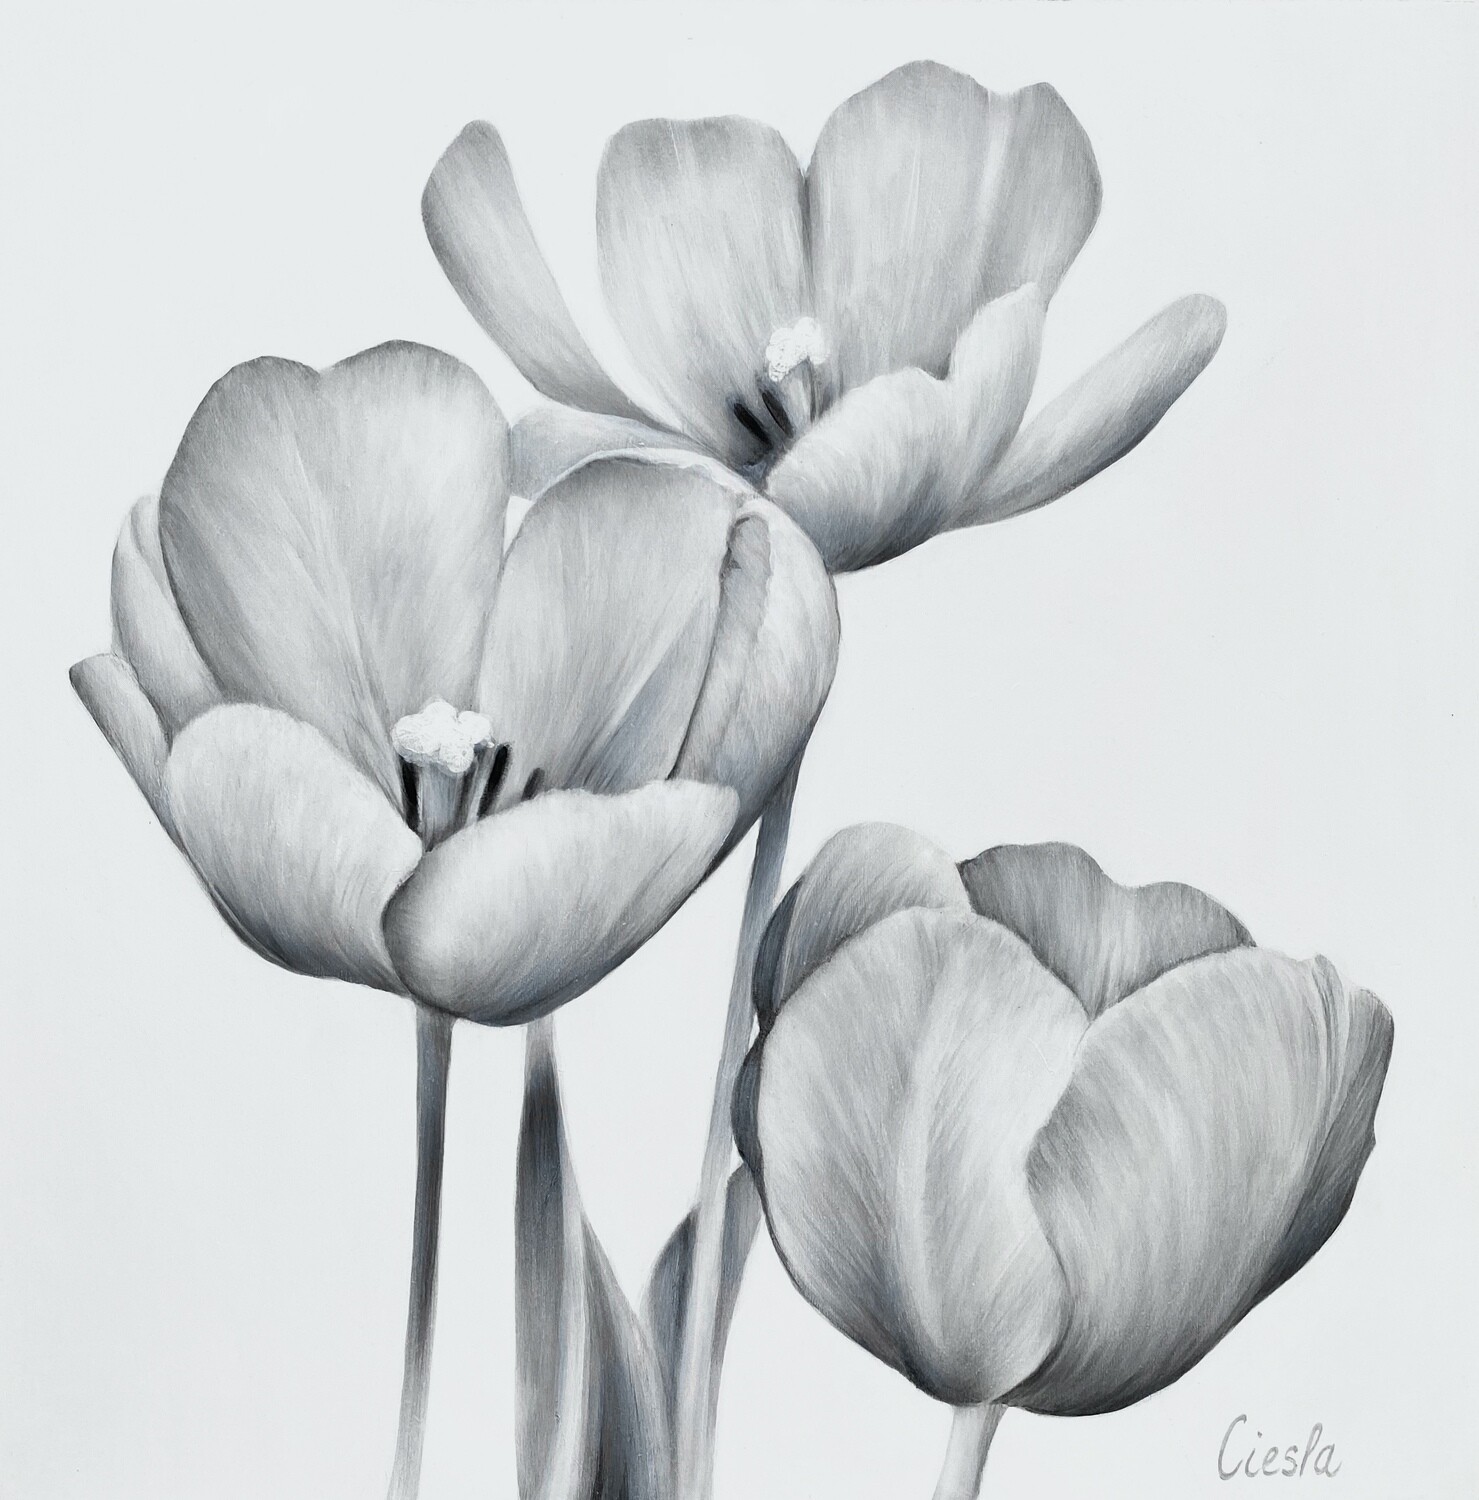 Impression sur toile haute définition.
TROIS REINES 20x20 ( tulipes )